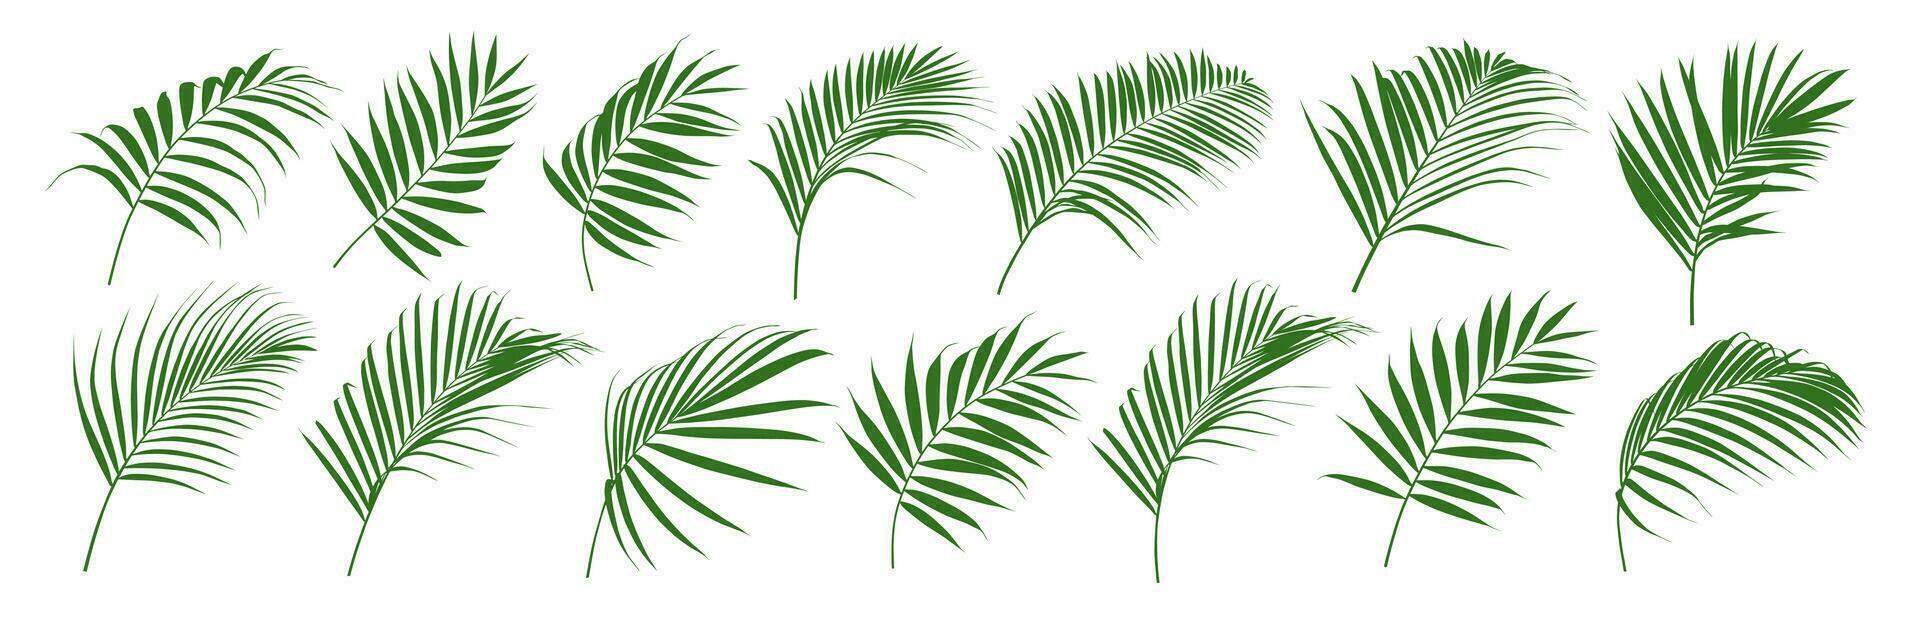 Set of palm leaf and coconut leaf vector illustrator